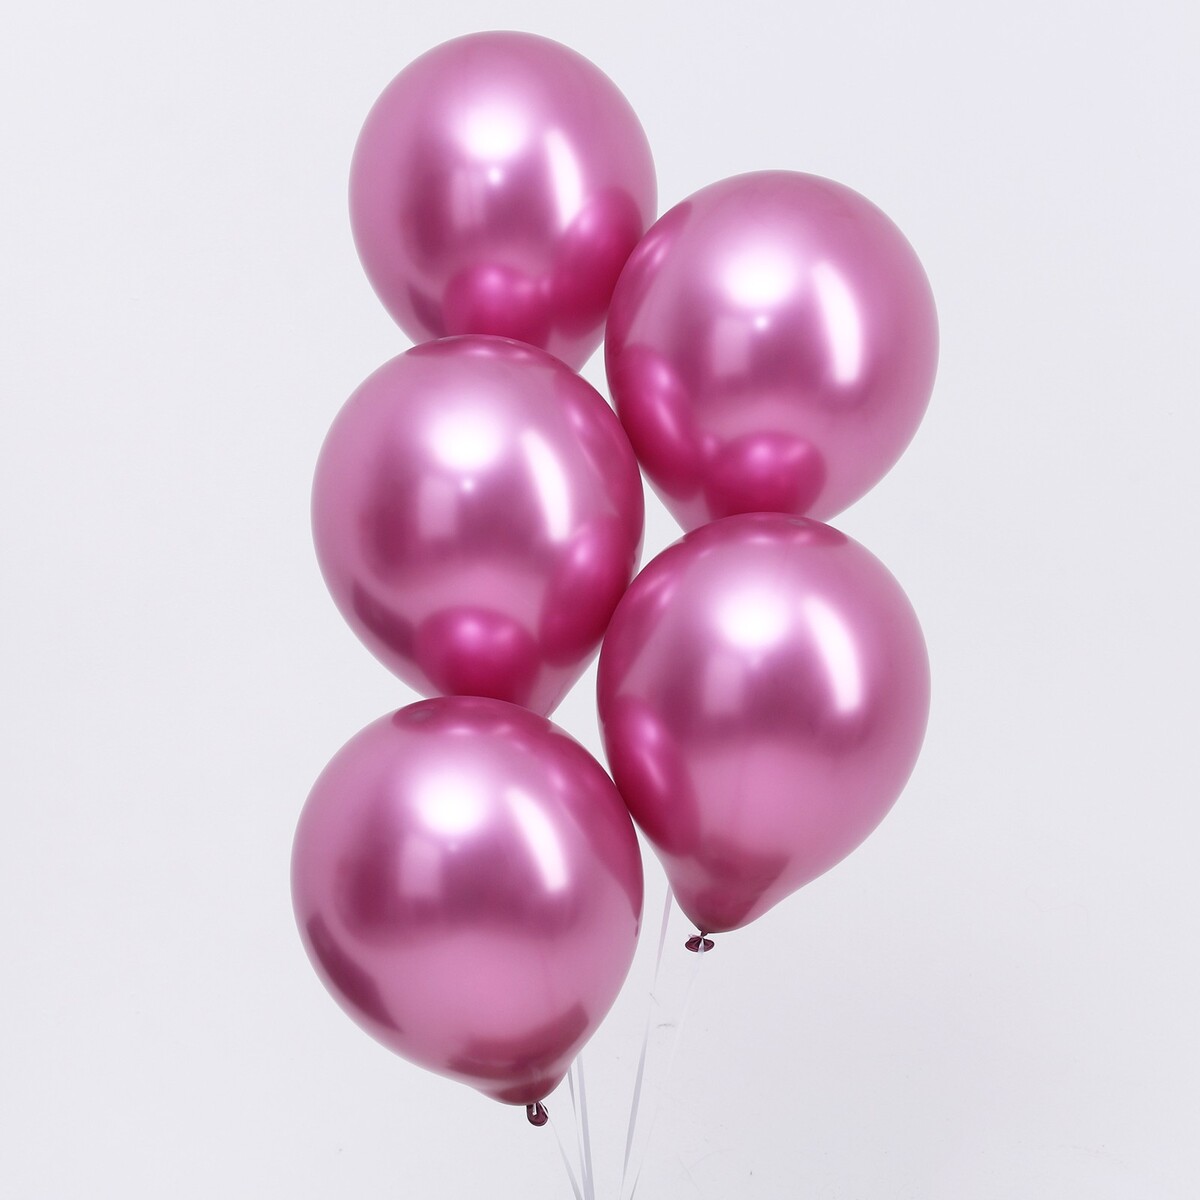 Шар латексный 12“, хром, в наборе 100 шт., цвет насыщенный розовый шар латексный 12“ хром в наборе 100 шт насыщенный розовый